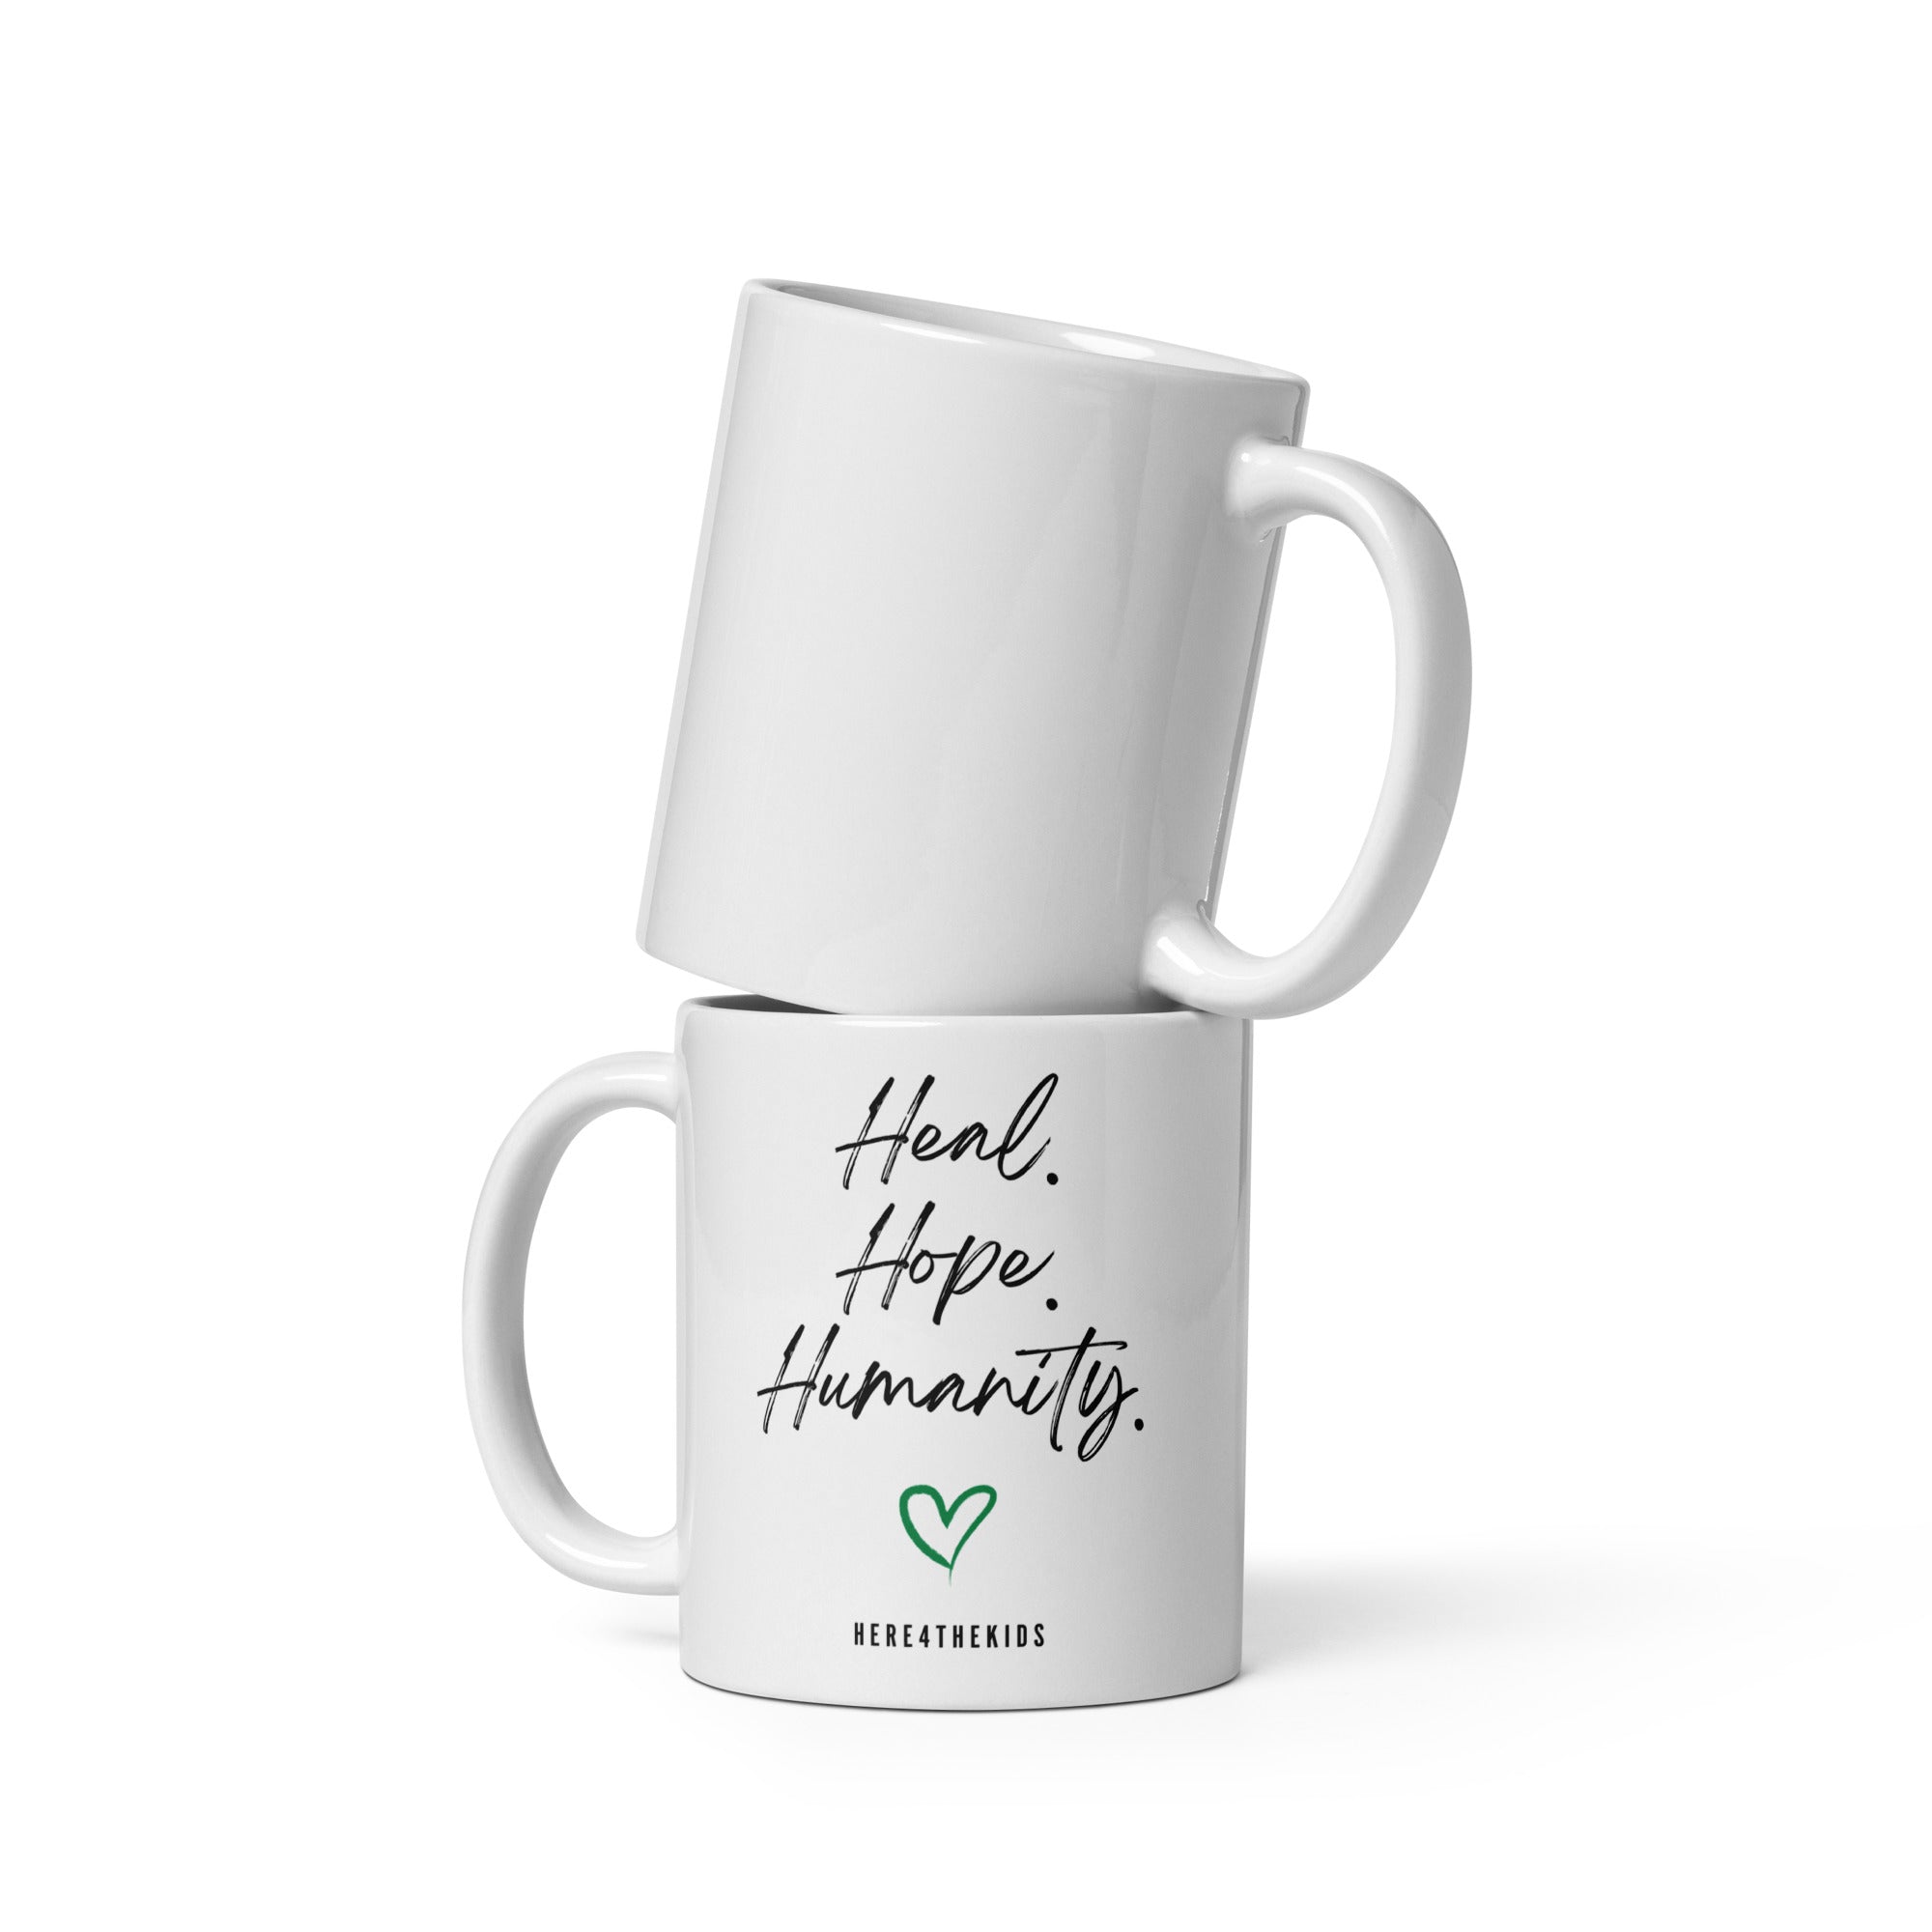 H4TK Heal Hope Humanity Mug